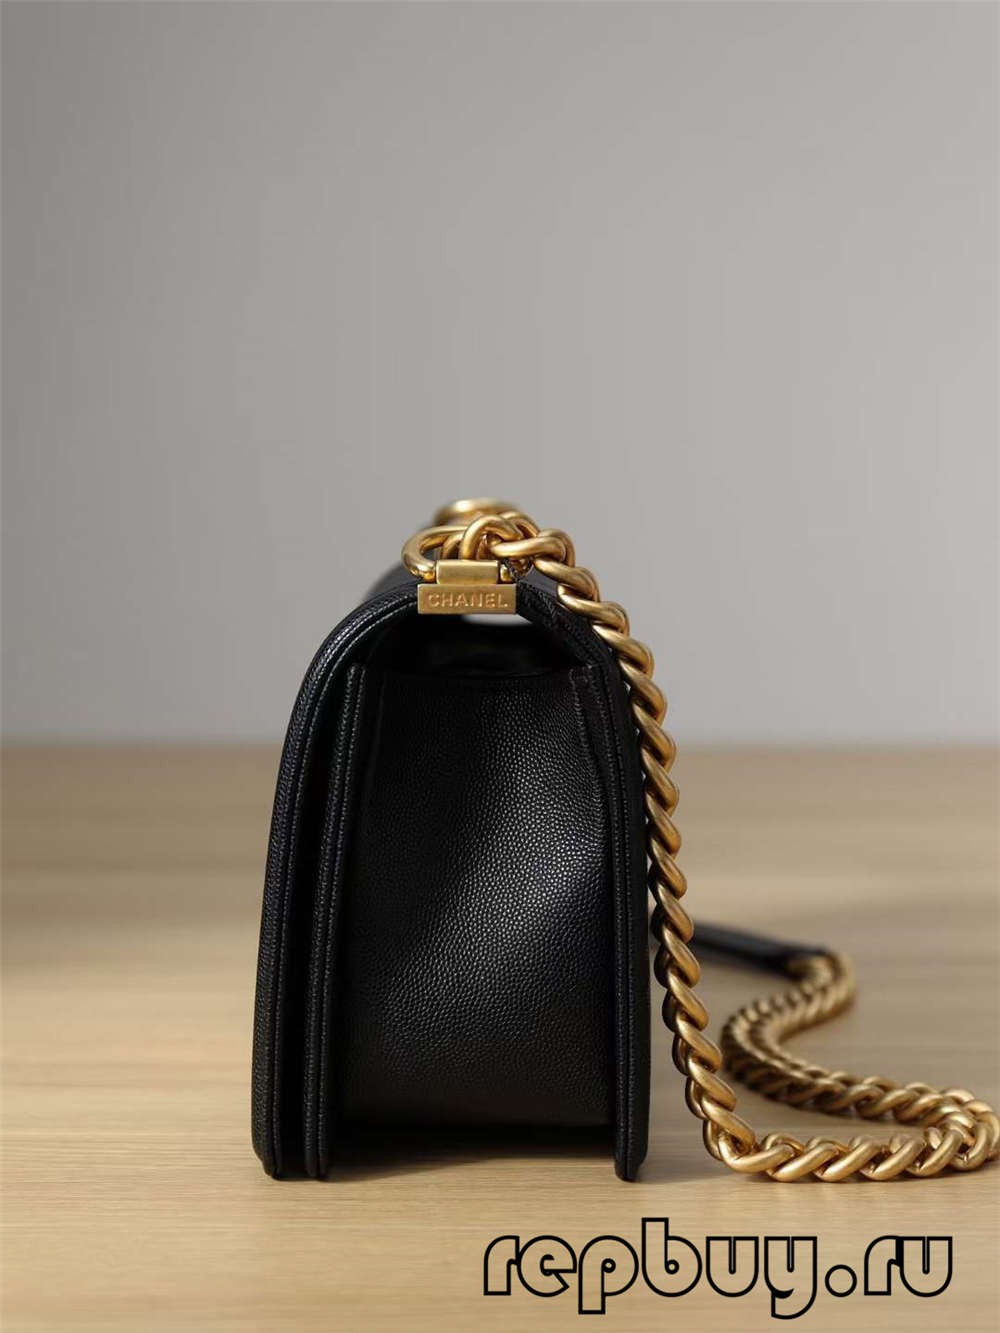 Chanel Leboy กระเป๋าถือแบบจำลองด้านบนหัวเข็มขัดสีทองขนาดกลาง (รุ่น 2022) - ร้านค้าออนไลน์กระเป๋า Louis Vuitton ปลอมคุณภาพดีที่สุด, นักออกแบบกระเป๋าจำลอง ru